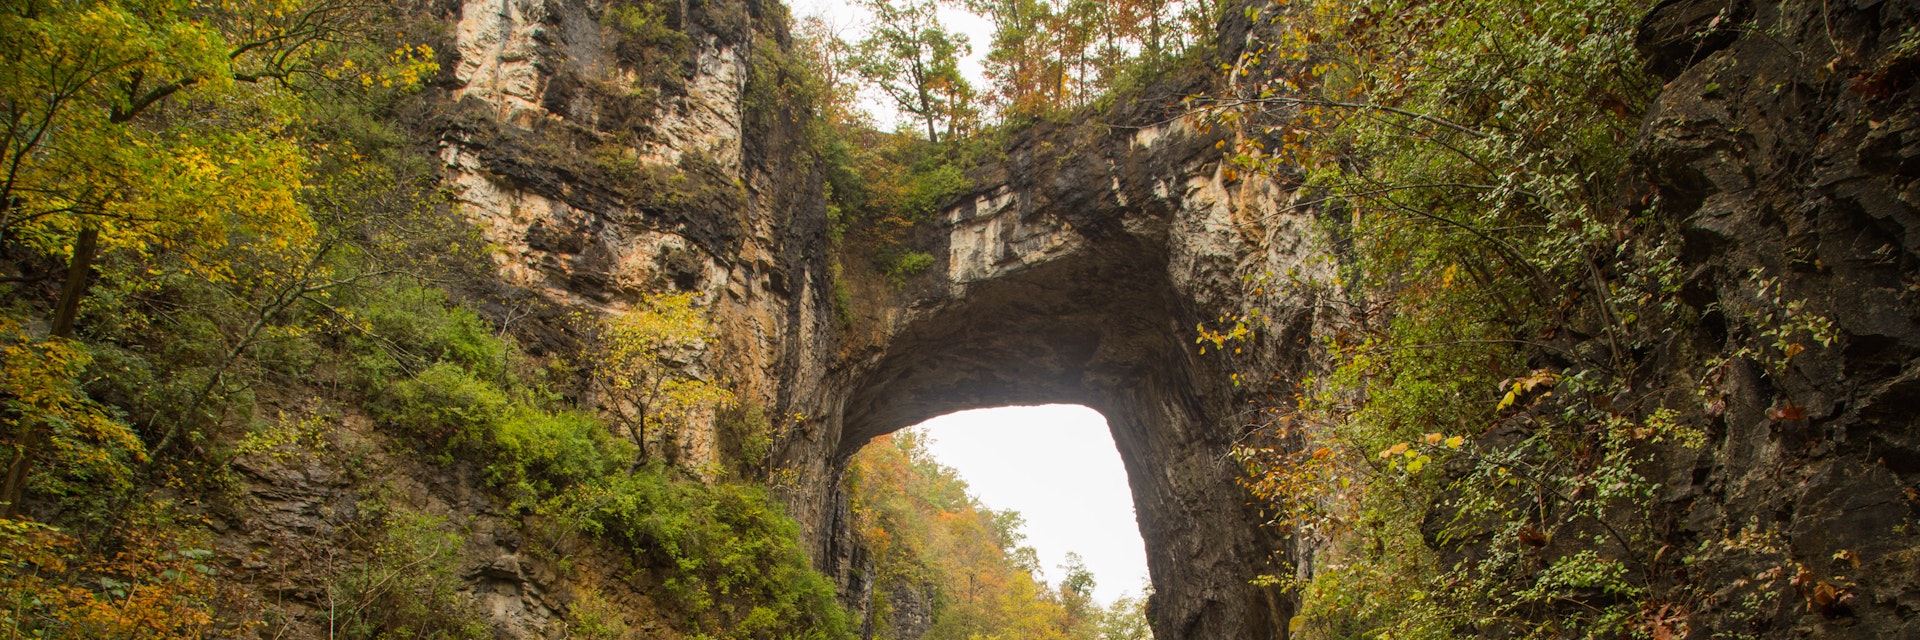 Natural Bridge in Fall.